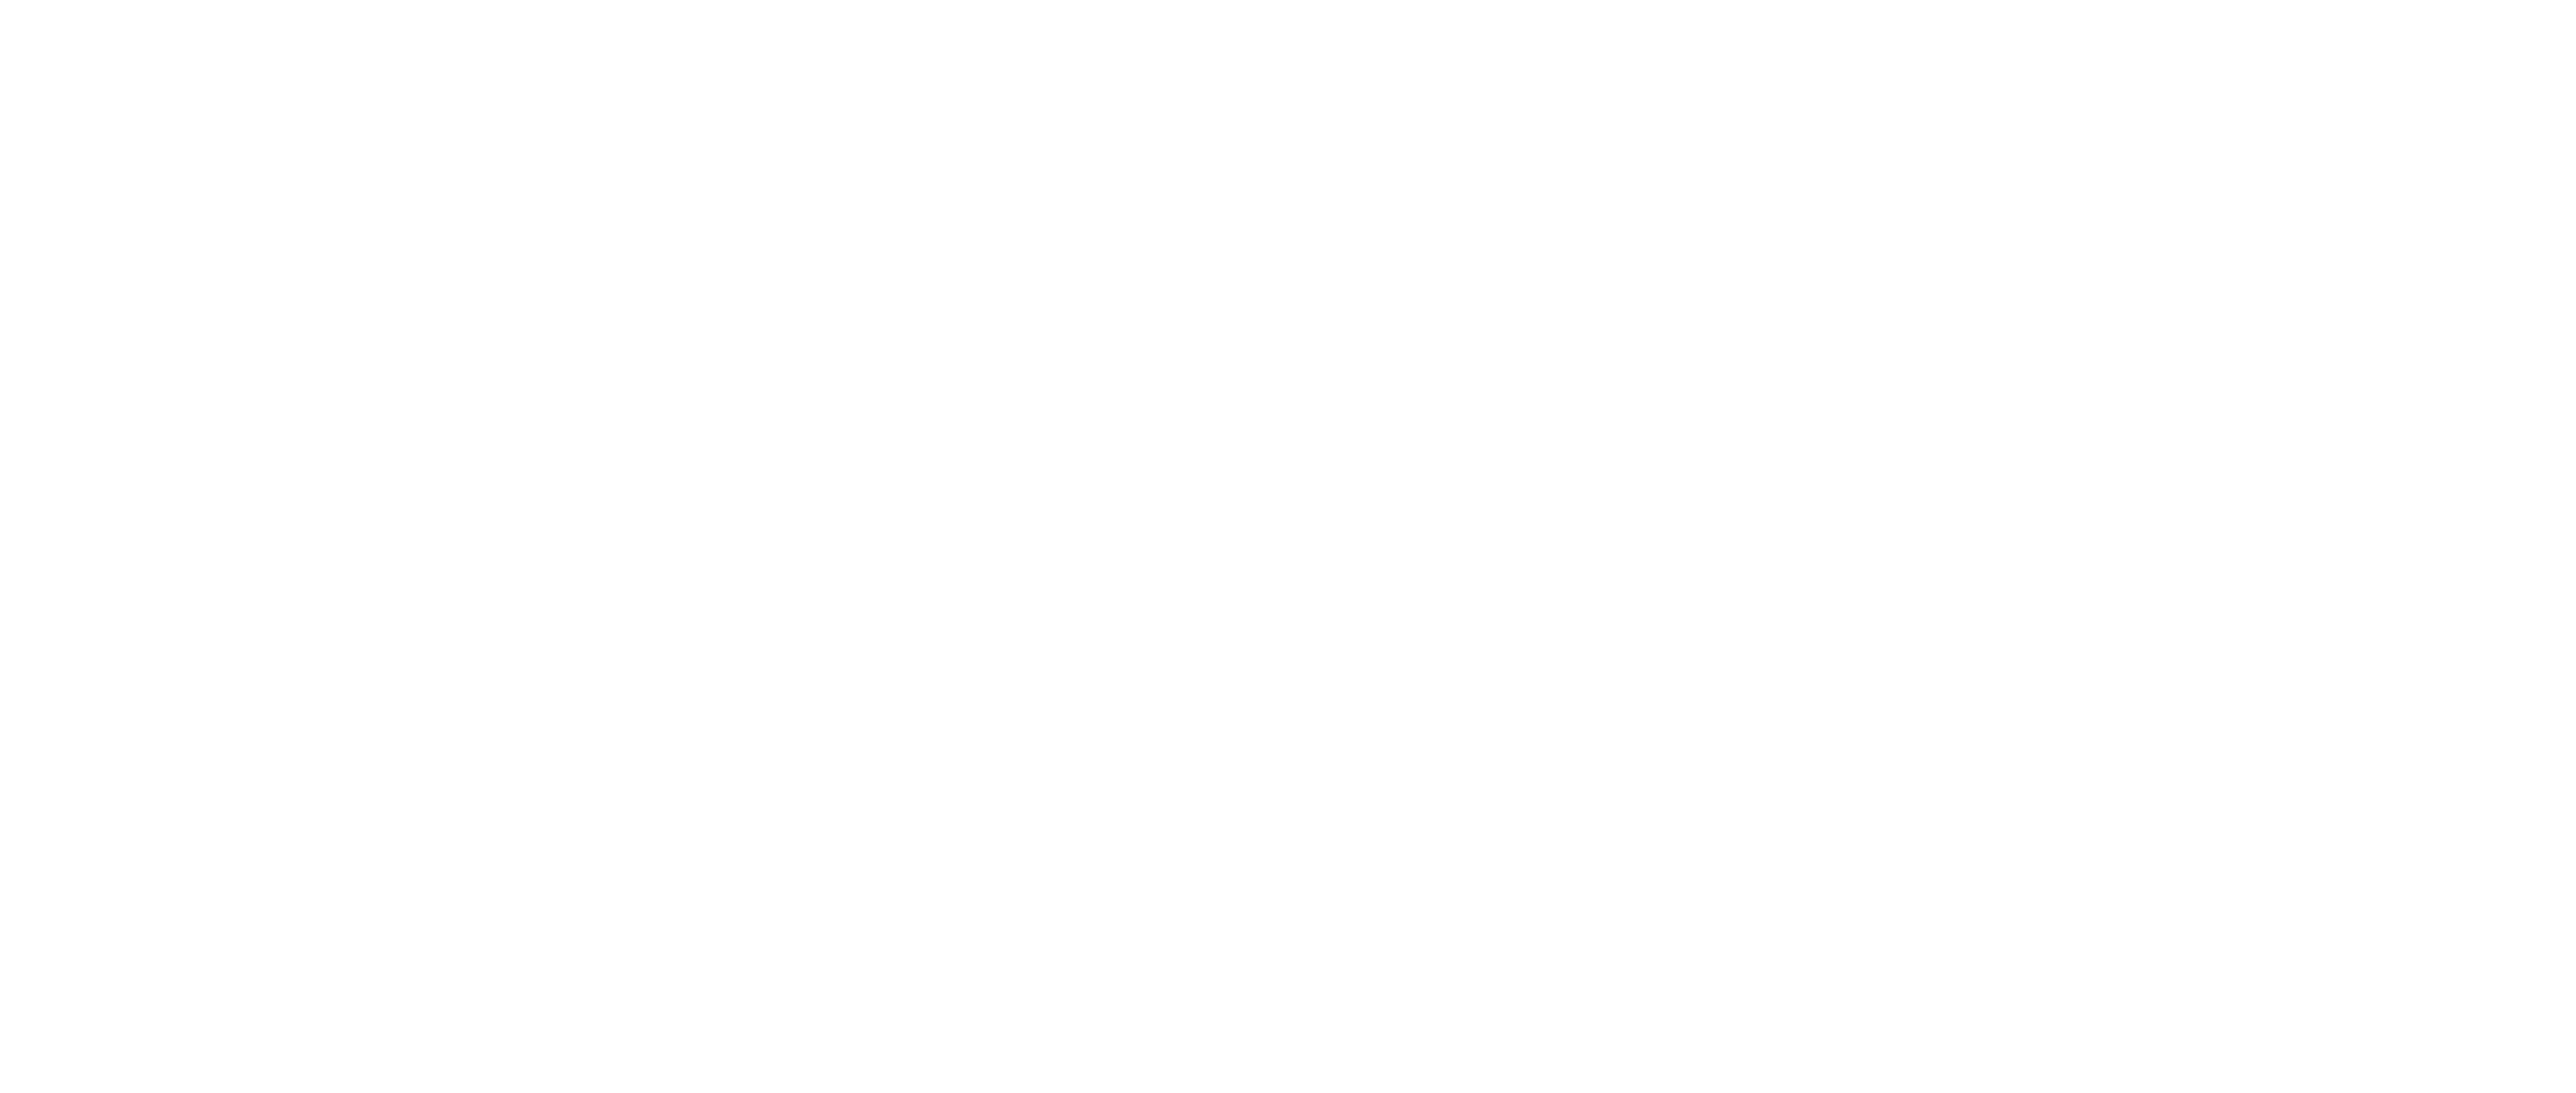 Канал .Black специализируется на показе остросюжетных телесериалов, полнометражных художественных фильмов и реалити-шоу.